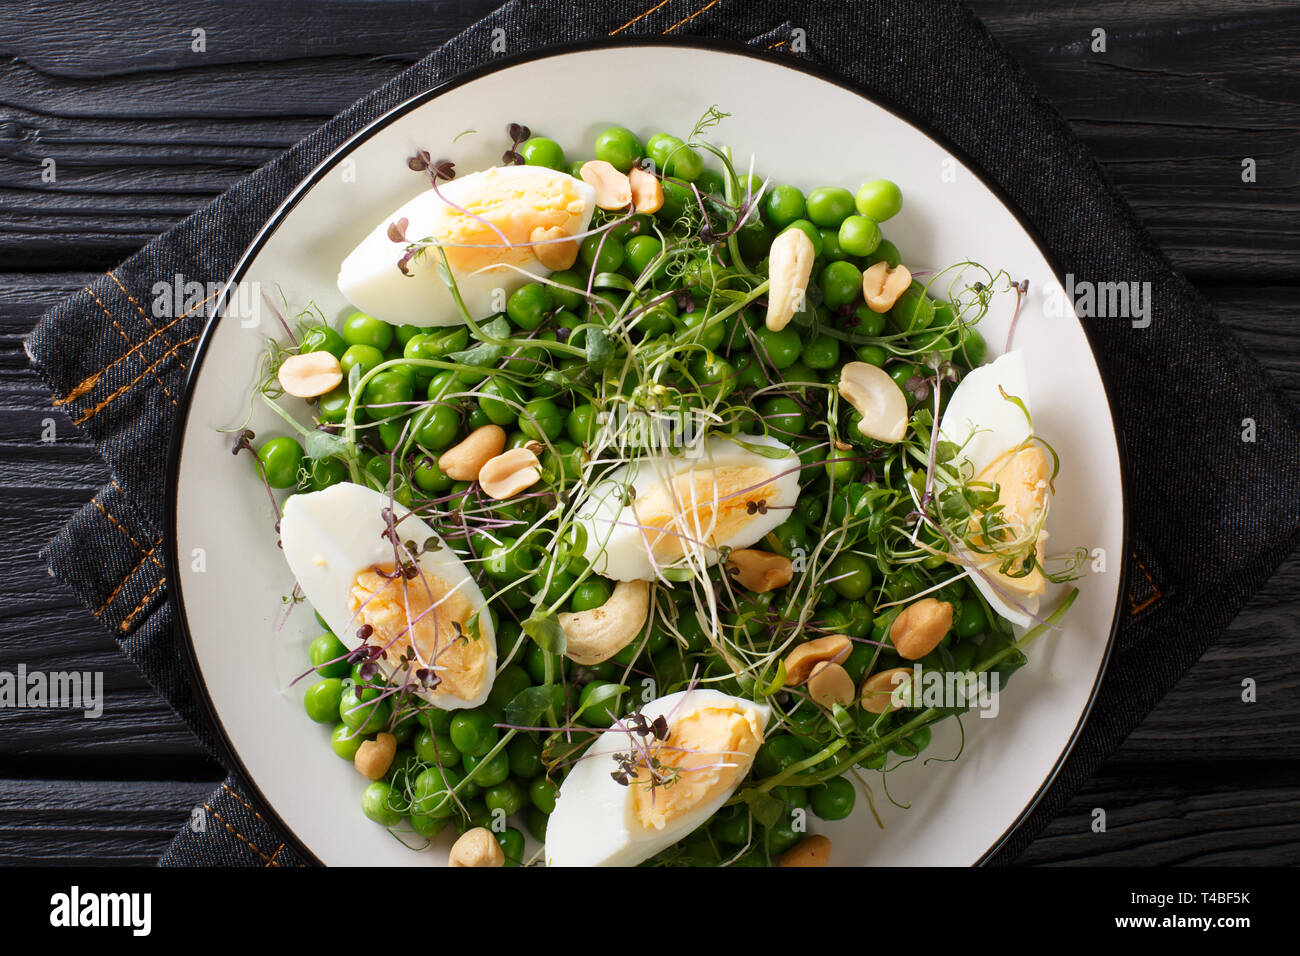 Leckeren, gesunden Salat von grünen Erbsen, micro Grüns, Nüsse und Eier close-up auf einem Schild auf dem Tisch gekocht. horizontal oben Ansicht von oben Stockfoto